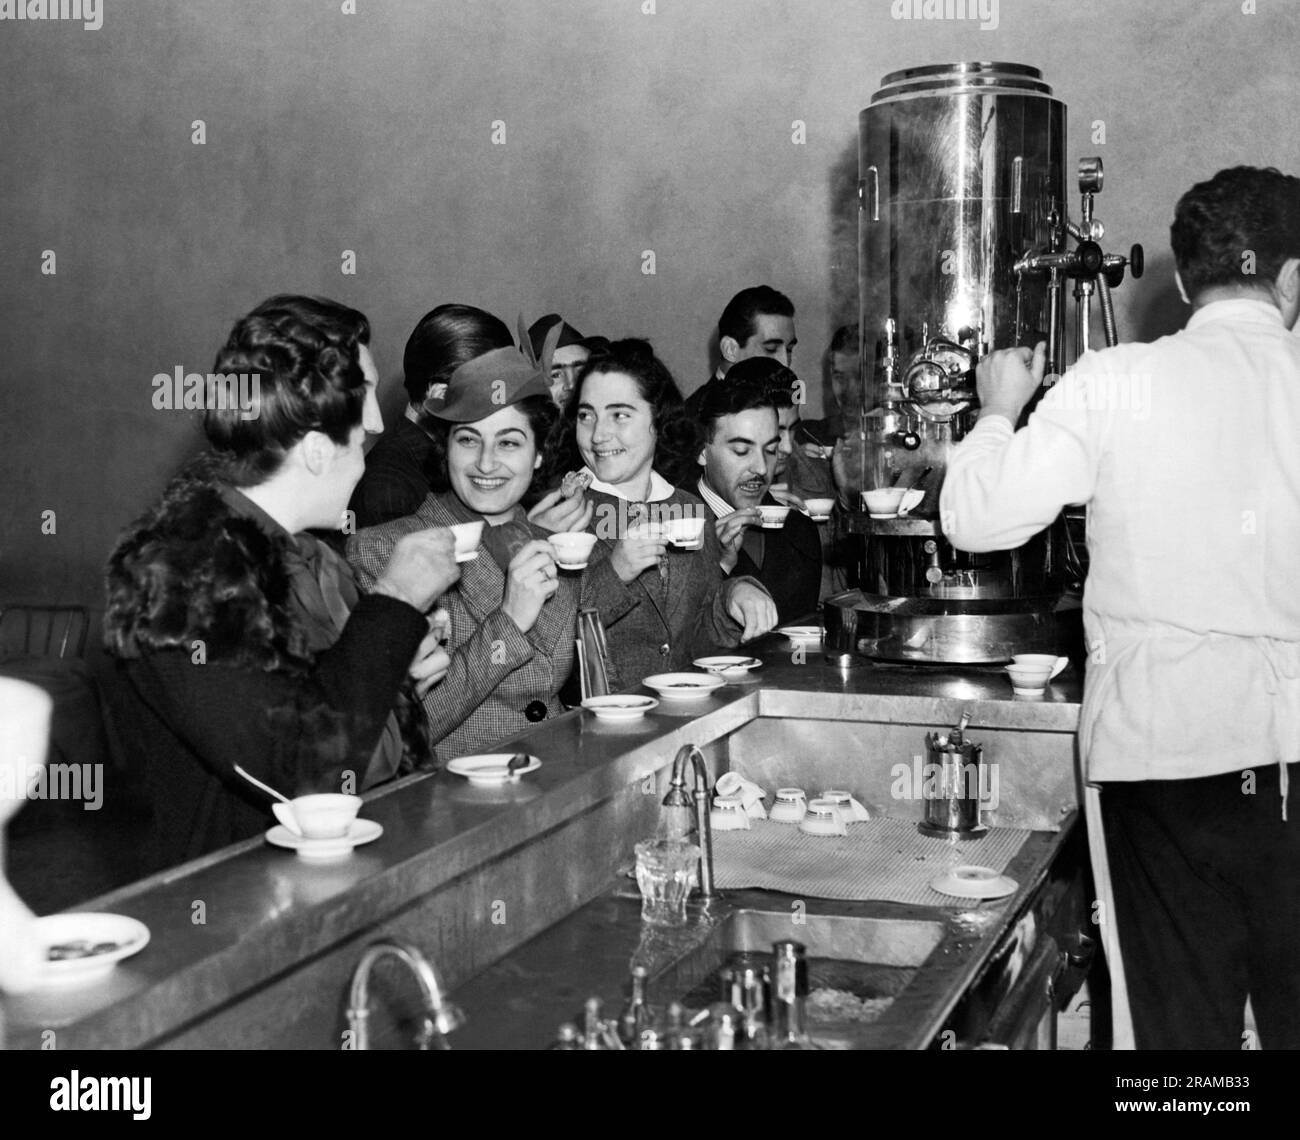 New York, New York : 1939. Les étudiants italiens qui étudient à l'université de Columbia font une pause dans leurs livres dans un café expresso local. Banque D'Images